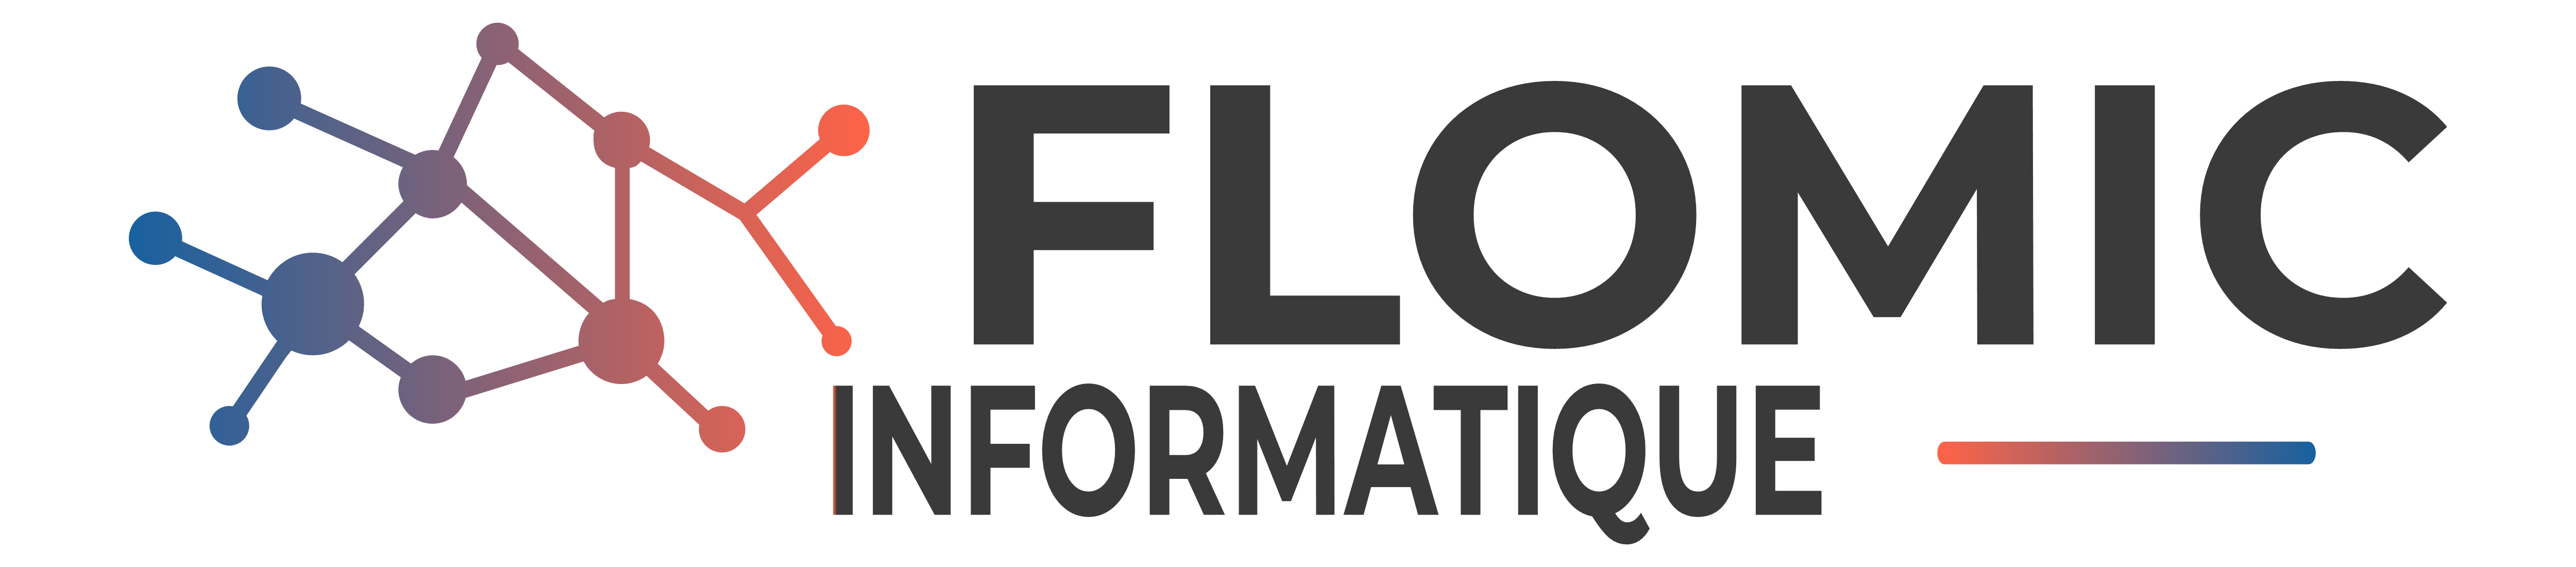 Logo Flomic